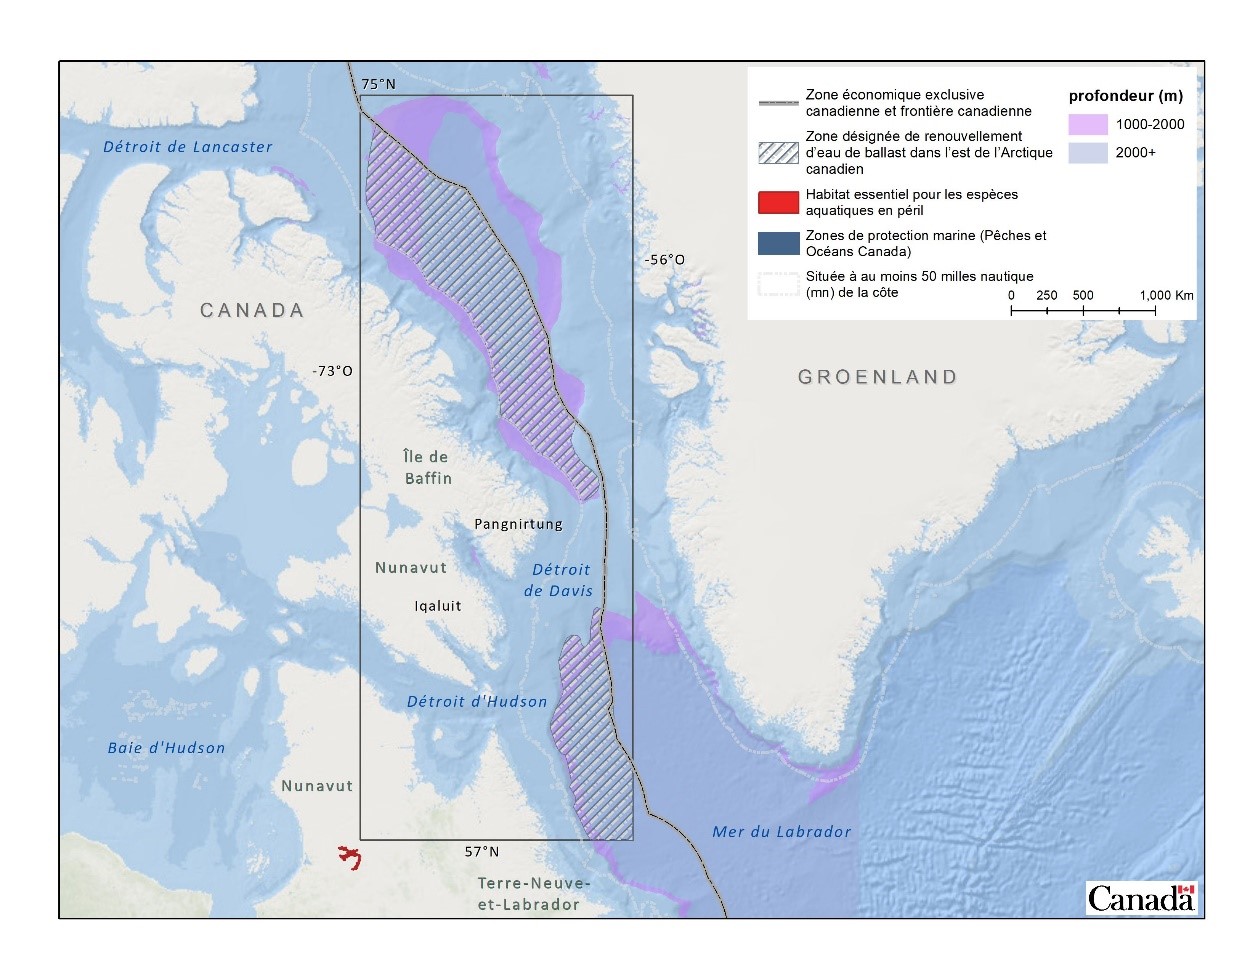 Figure 4. Zones désignées de renouvellement d’eau de ballast dans l’est de l’Arctique canadien